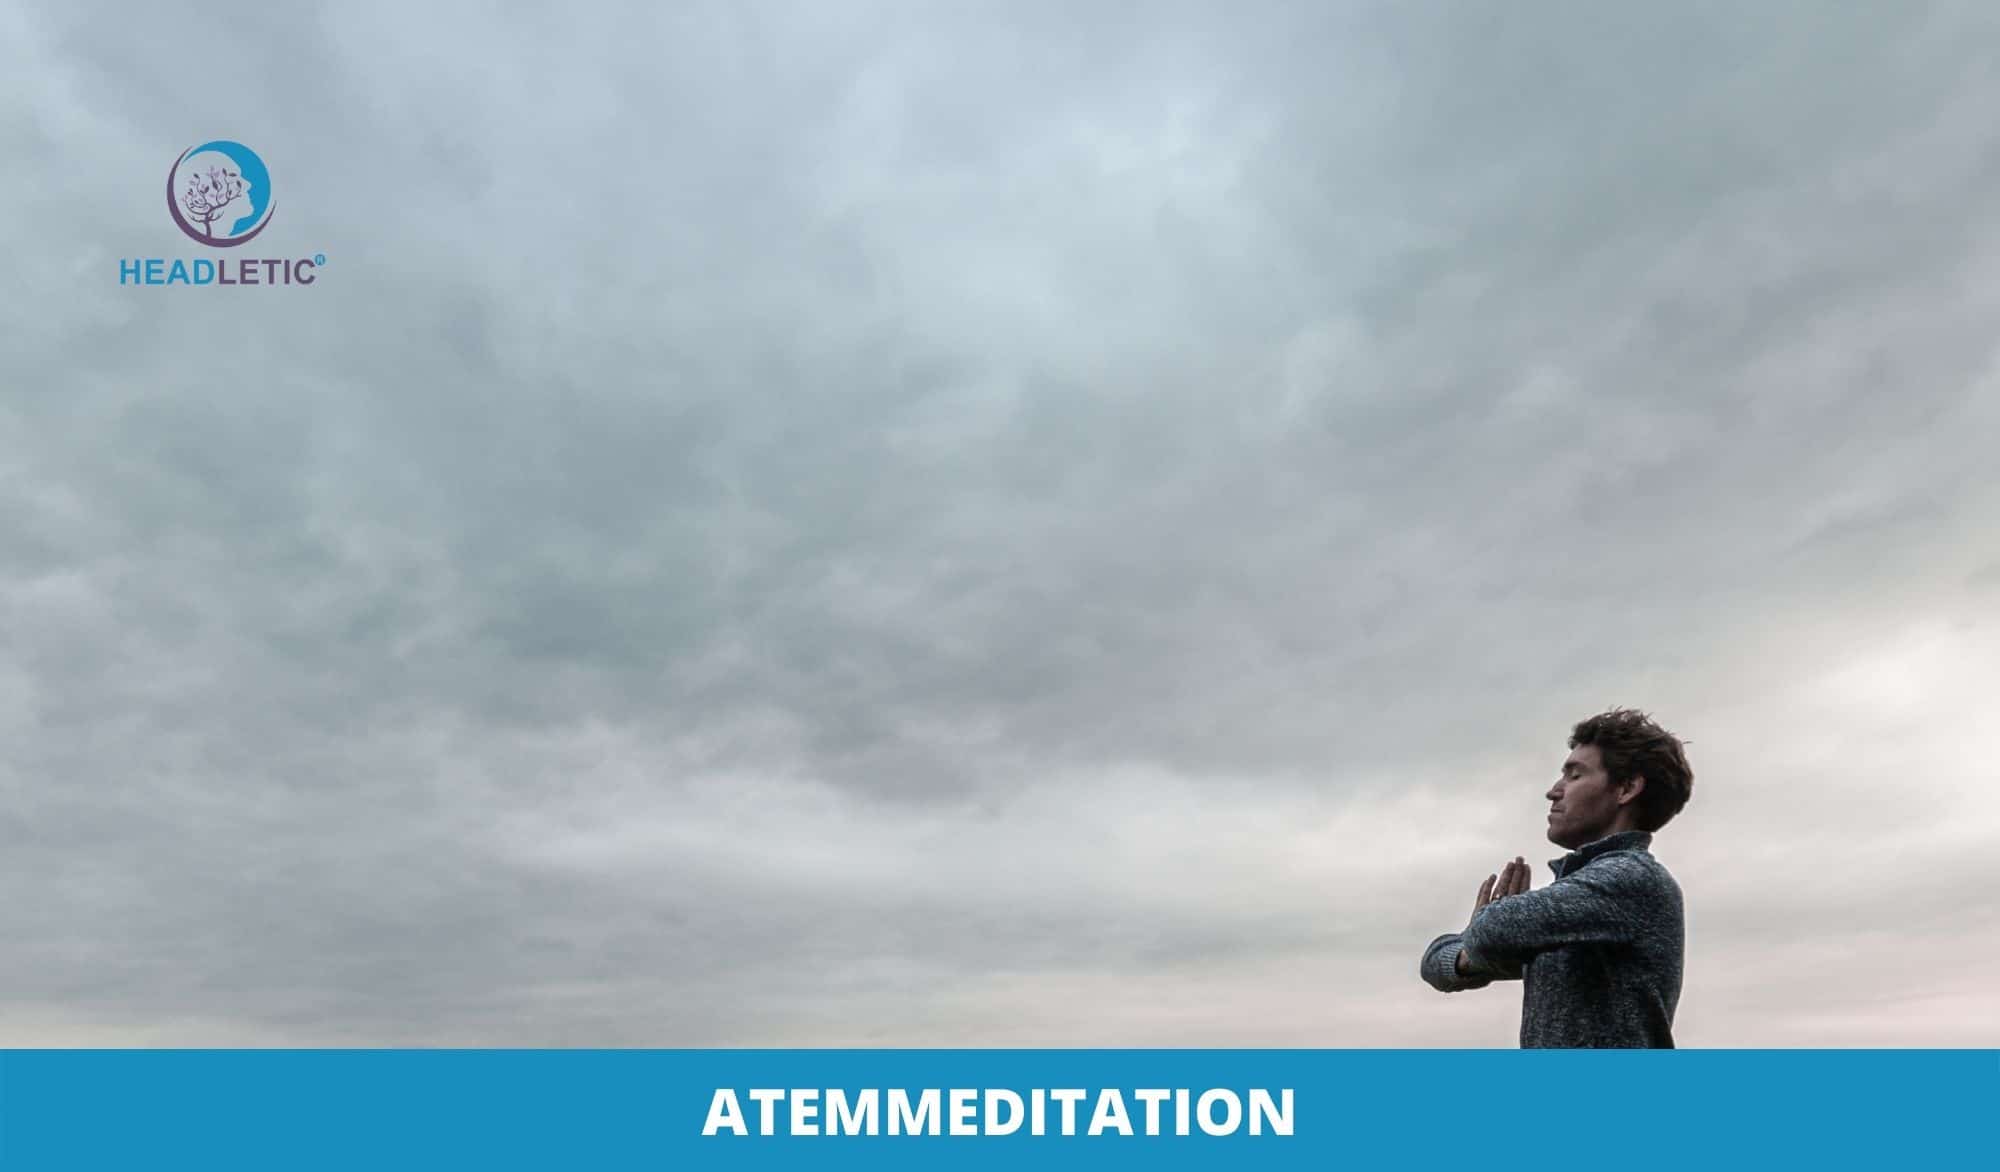 Angst mit Meditation ueberwinden - Atemmeditation